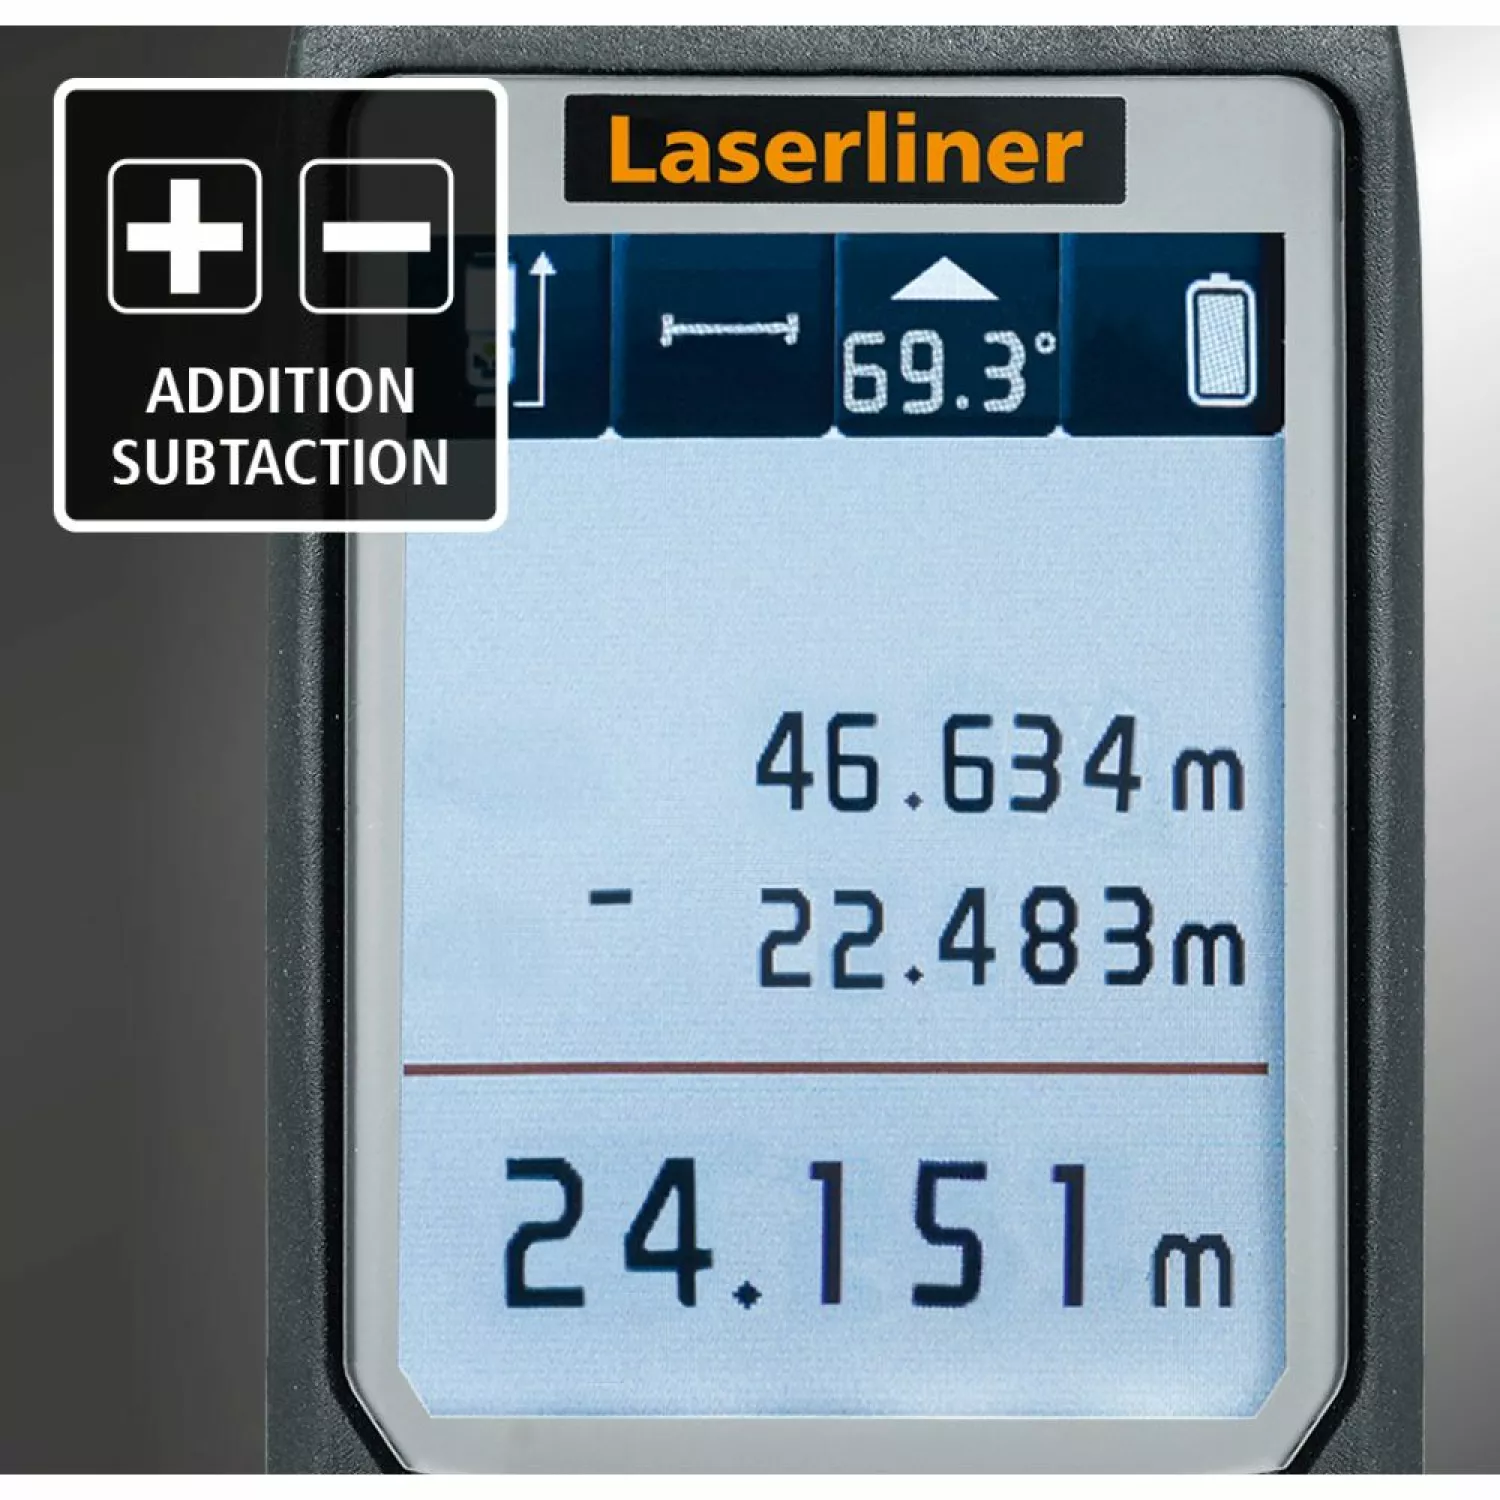 Laserliner LaserRange-Master Gi7 Pro Laserafstandsmeter - Groen - 70m-image